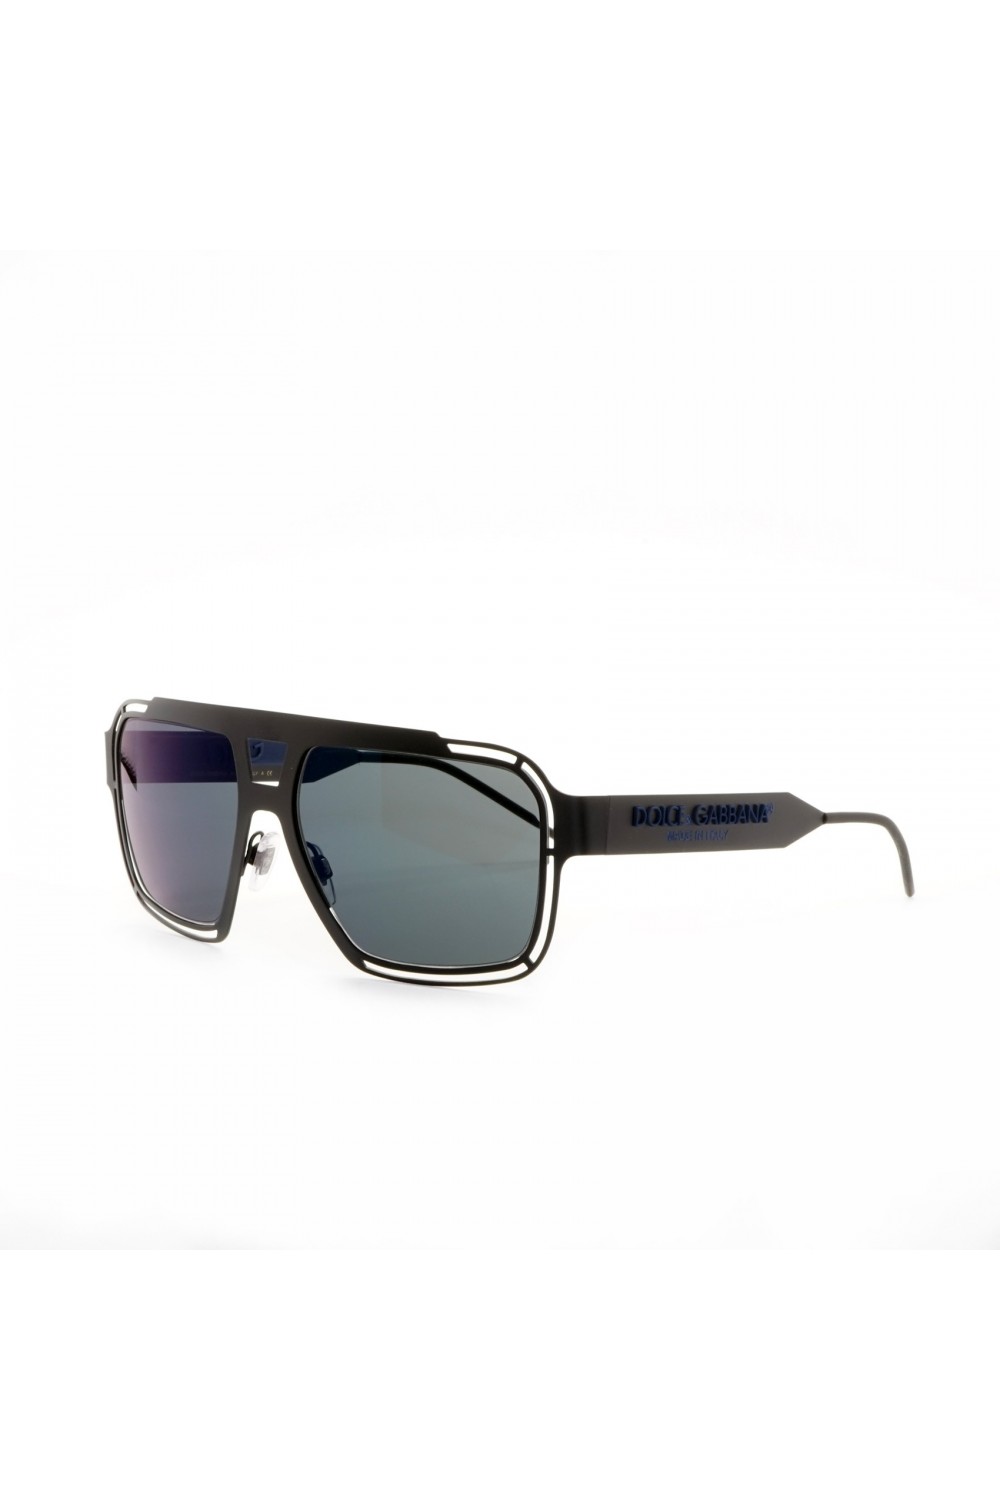 Dolce&Gabbana - Occhiali da sole rettangolari in metallo per uomo nero - DG2270